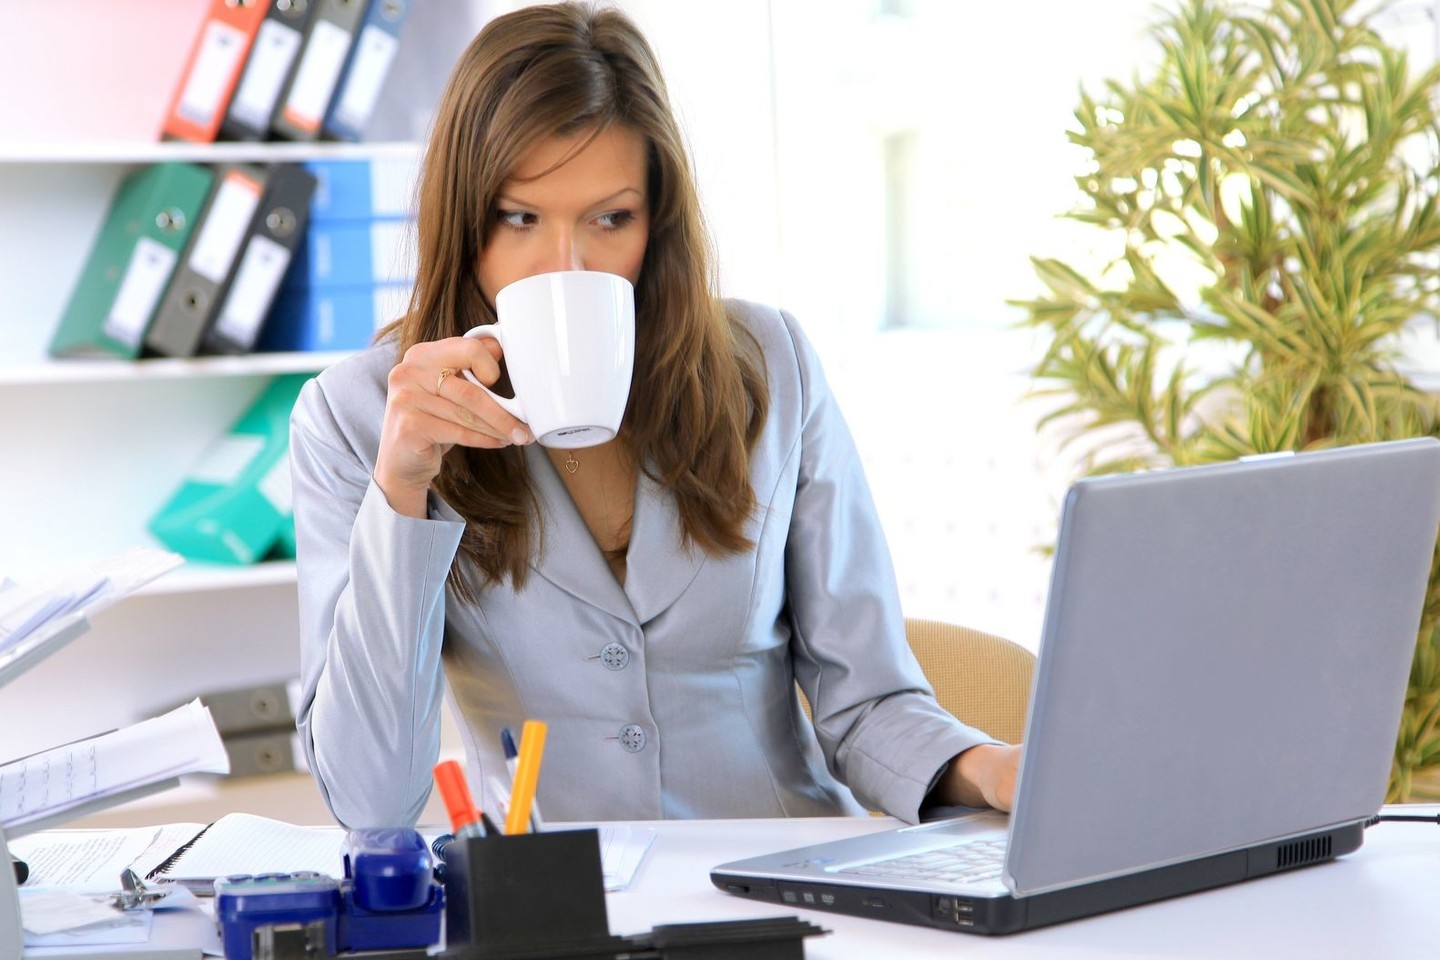  Kavos gėrimas ir nereguliarus maitinimasis gali turėti neigiamą poveikį sveikatai.<br> 123rf.com nuotr.